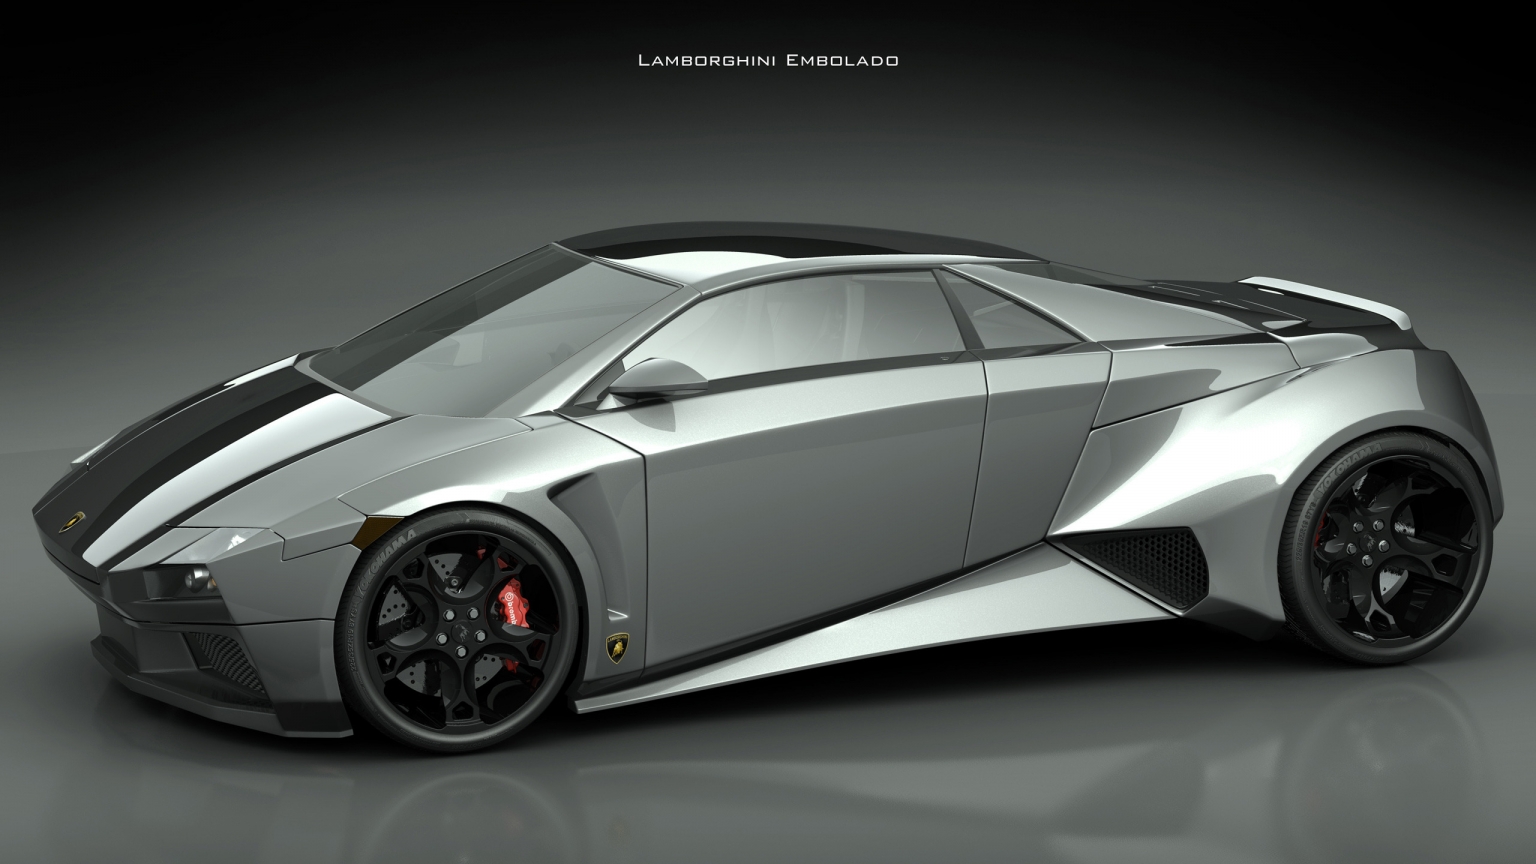 Lamborghini Embolado for 1536 x 864 HDTV resolution